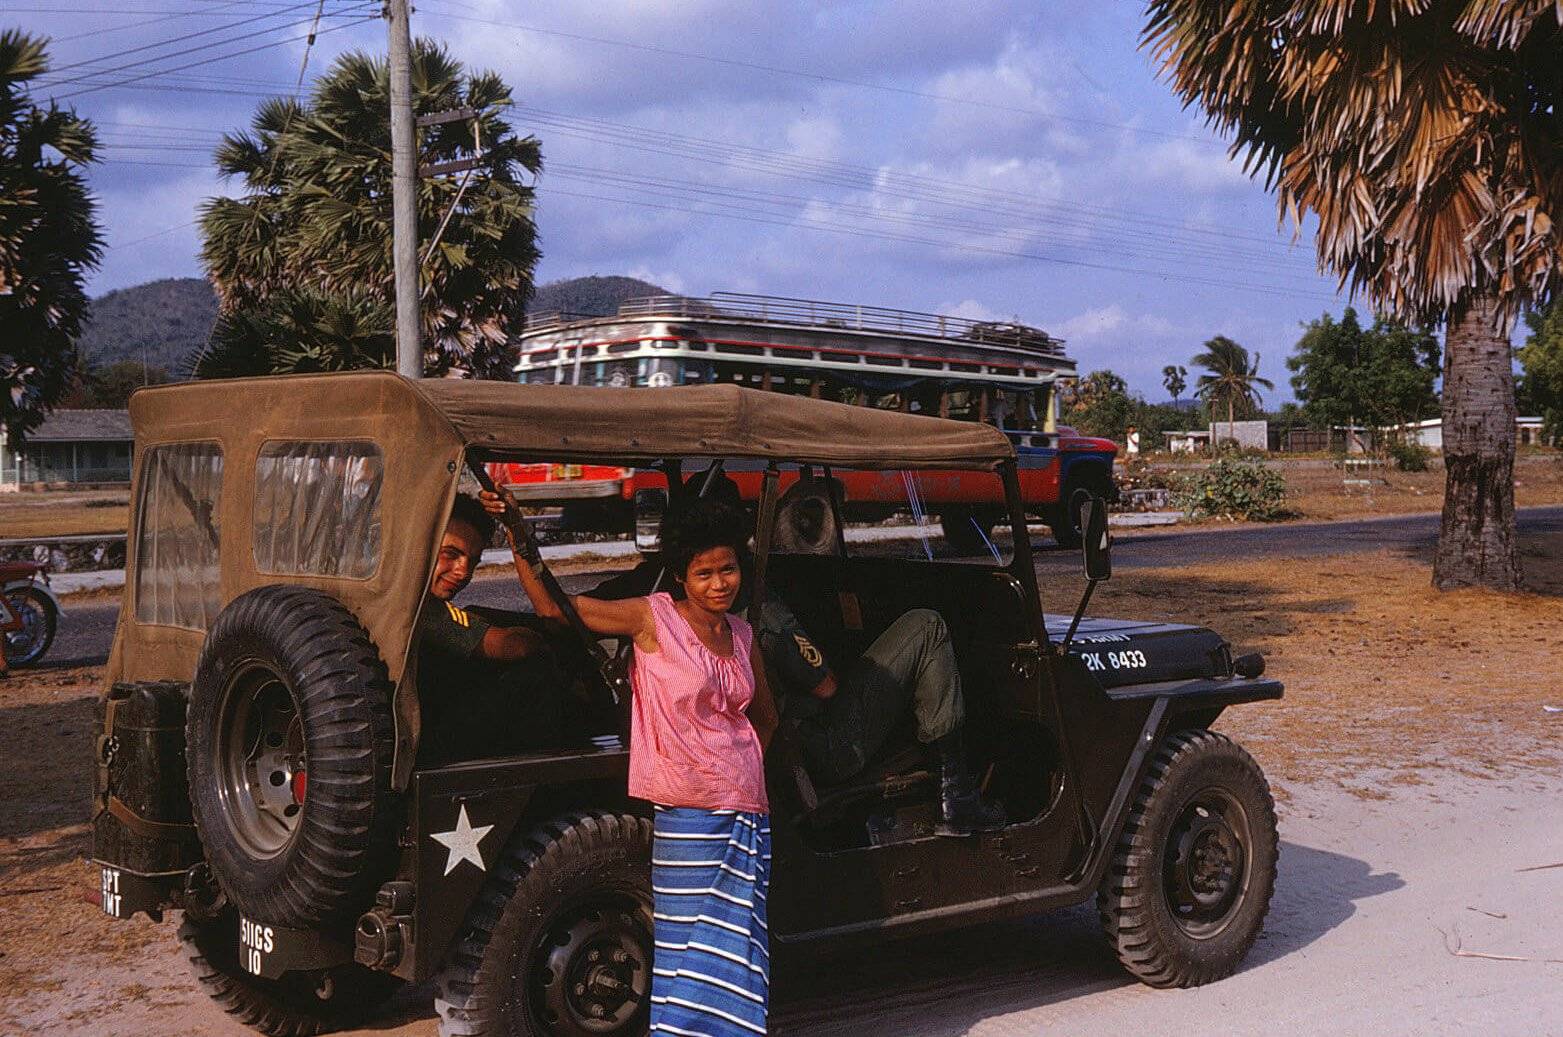 An Asian woman standing near a Jeep.